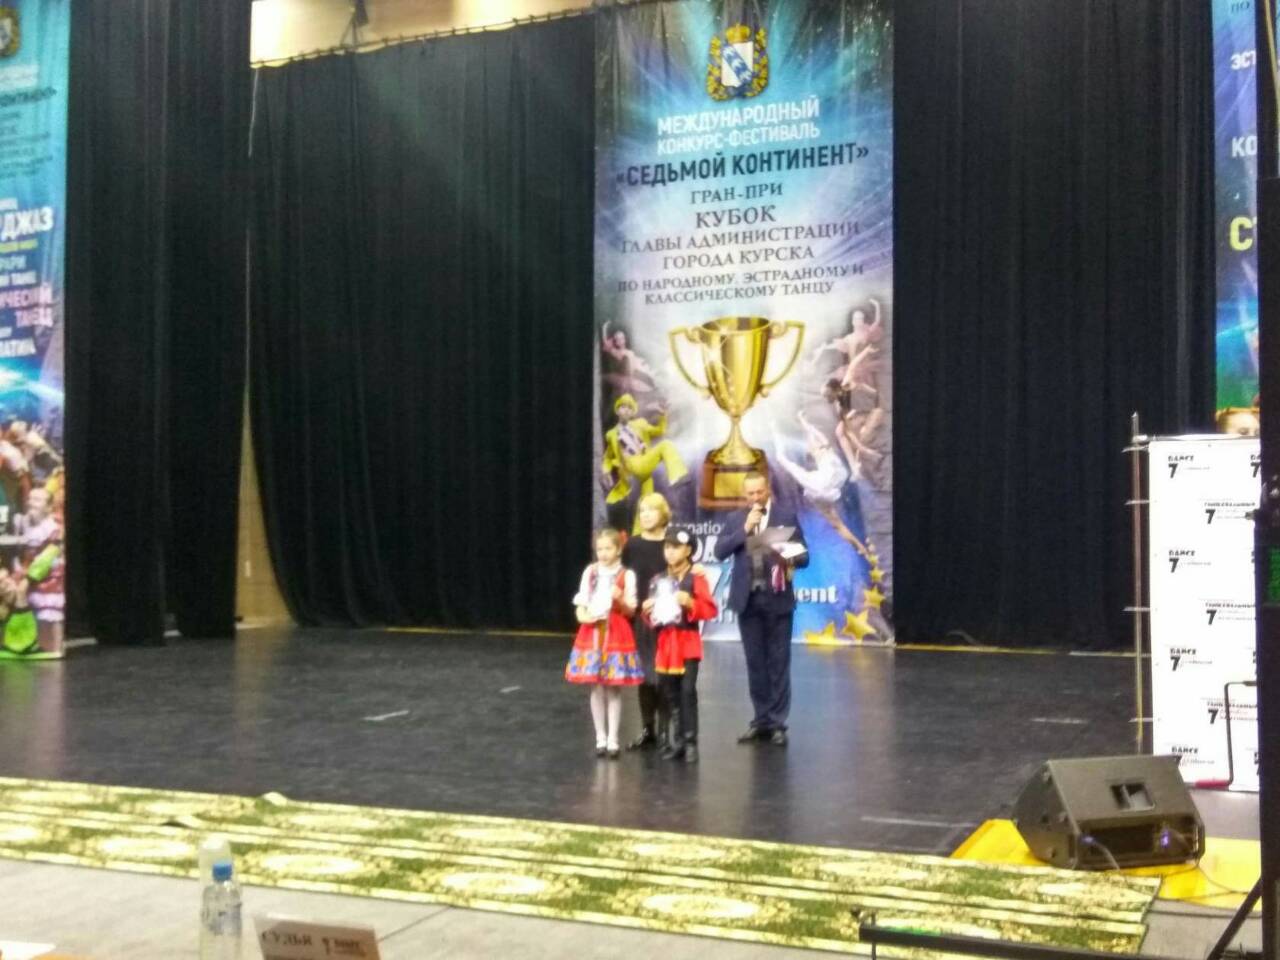 2 ноября учащиеся хореографического отделения школы слали лауреатами в Международном фестивале-конкурсе "Седьмой континент"